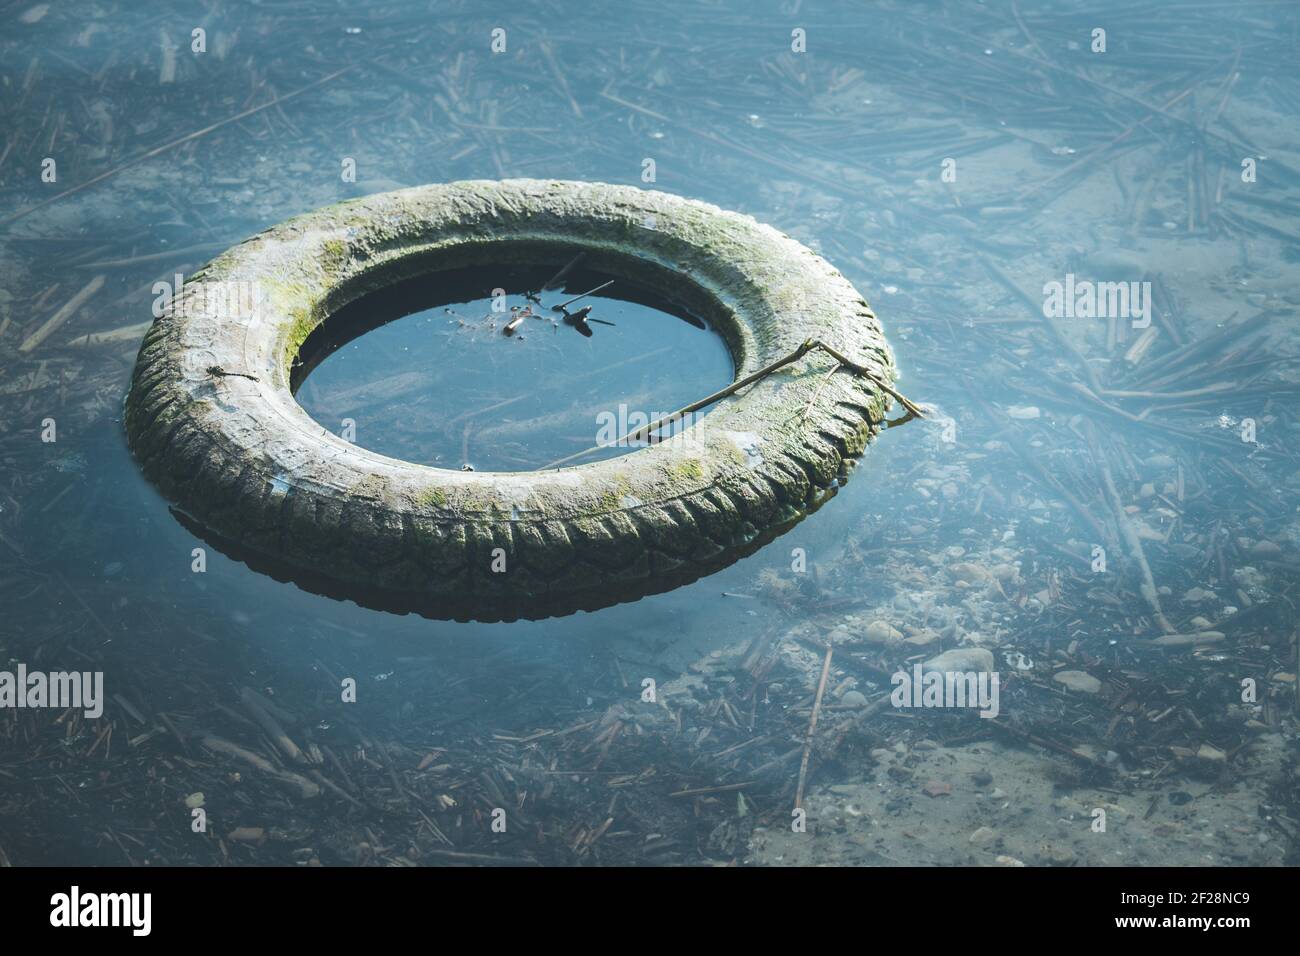 Umweltverschmutzung: Alte Reifen liegen im Wasser, an der Küste  Stockfotografie - Alamy